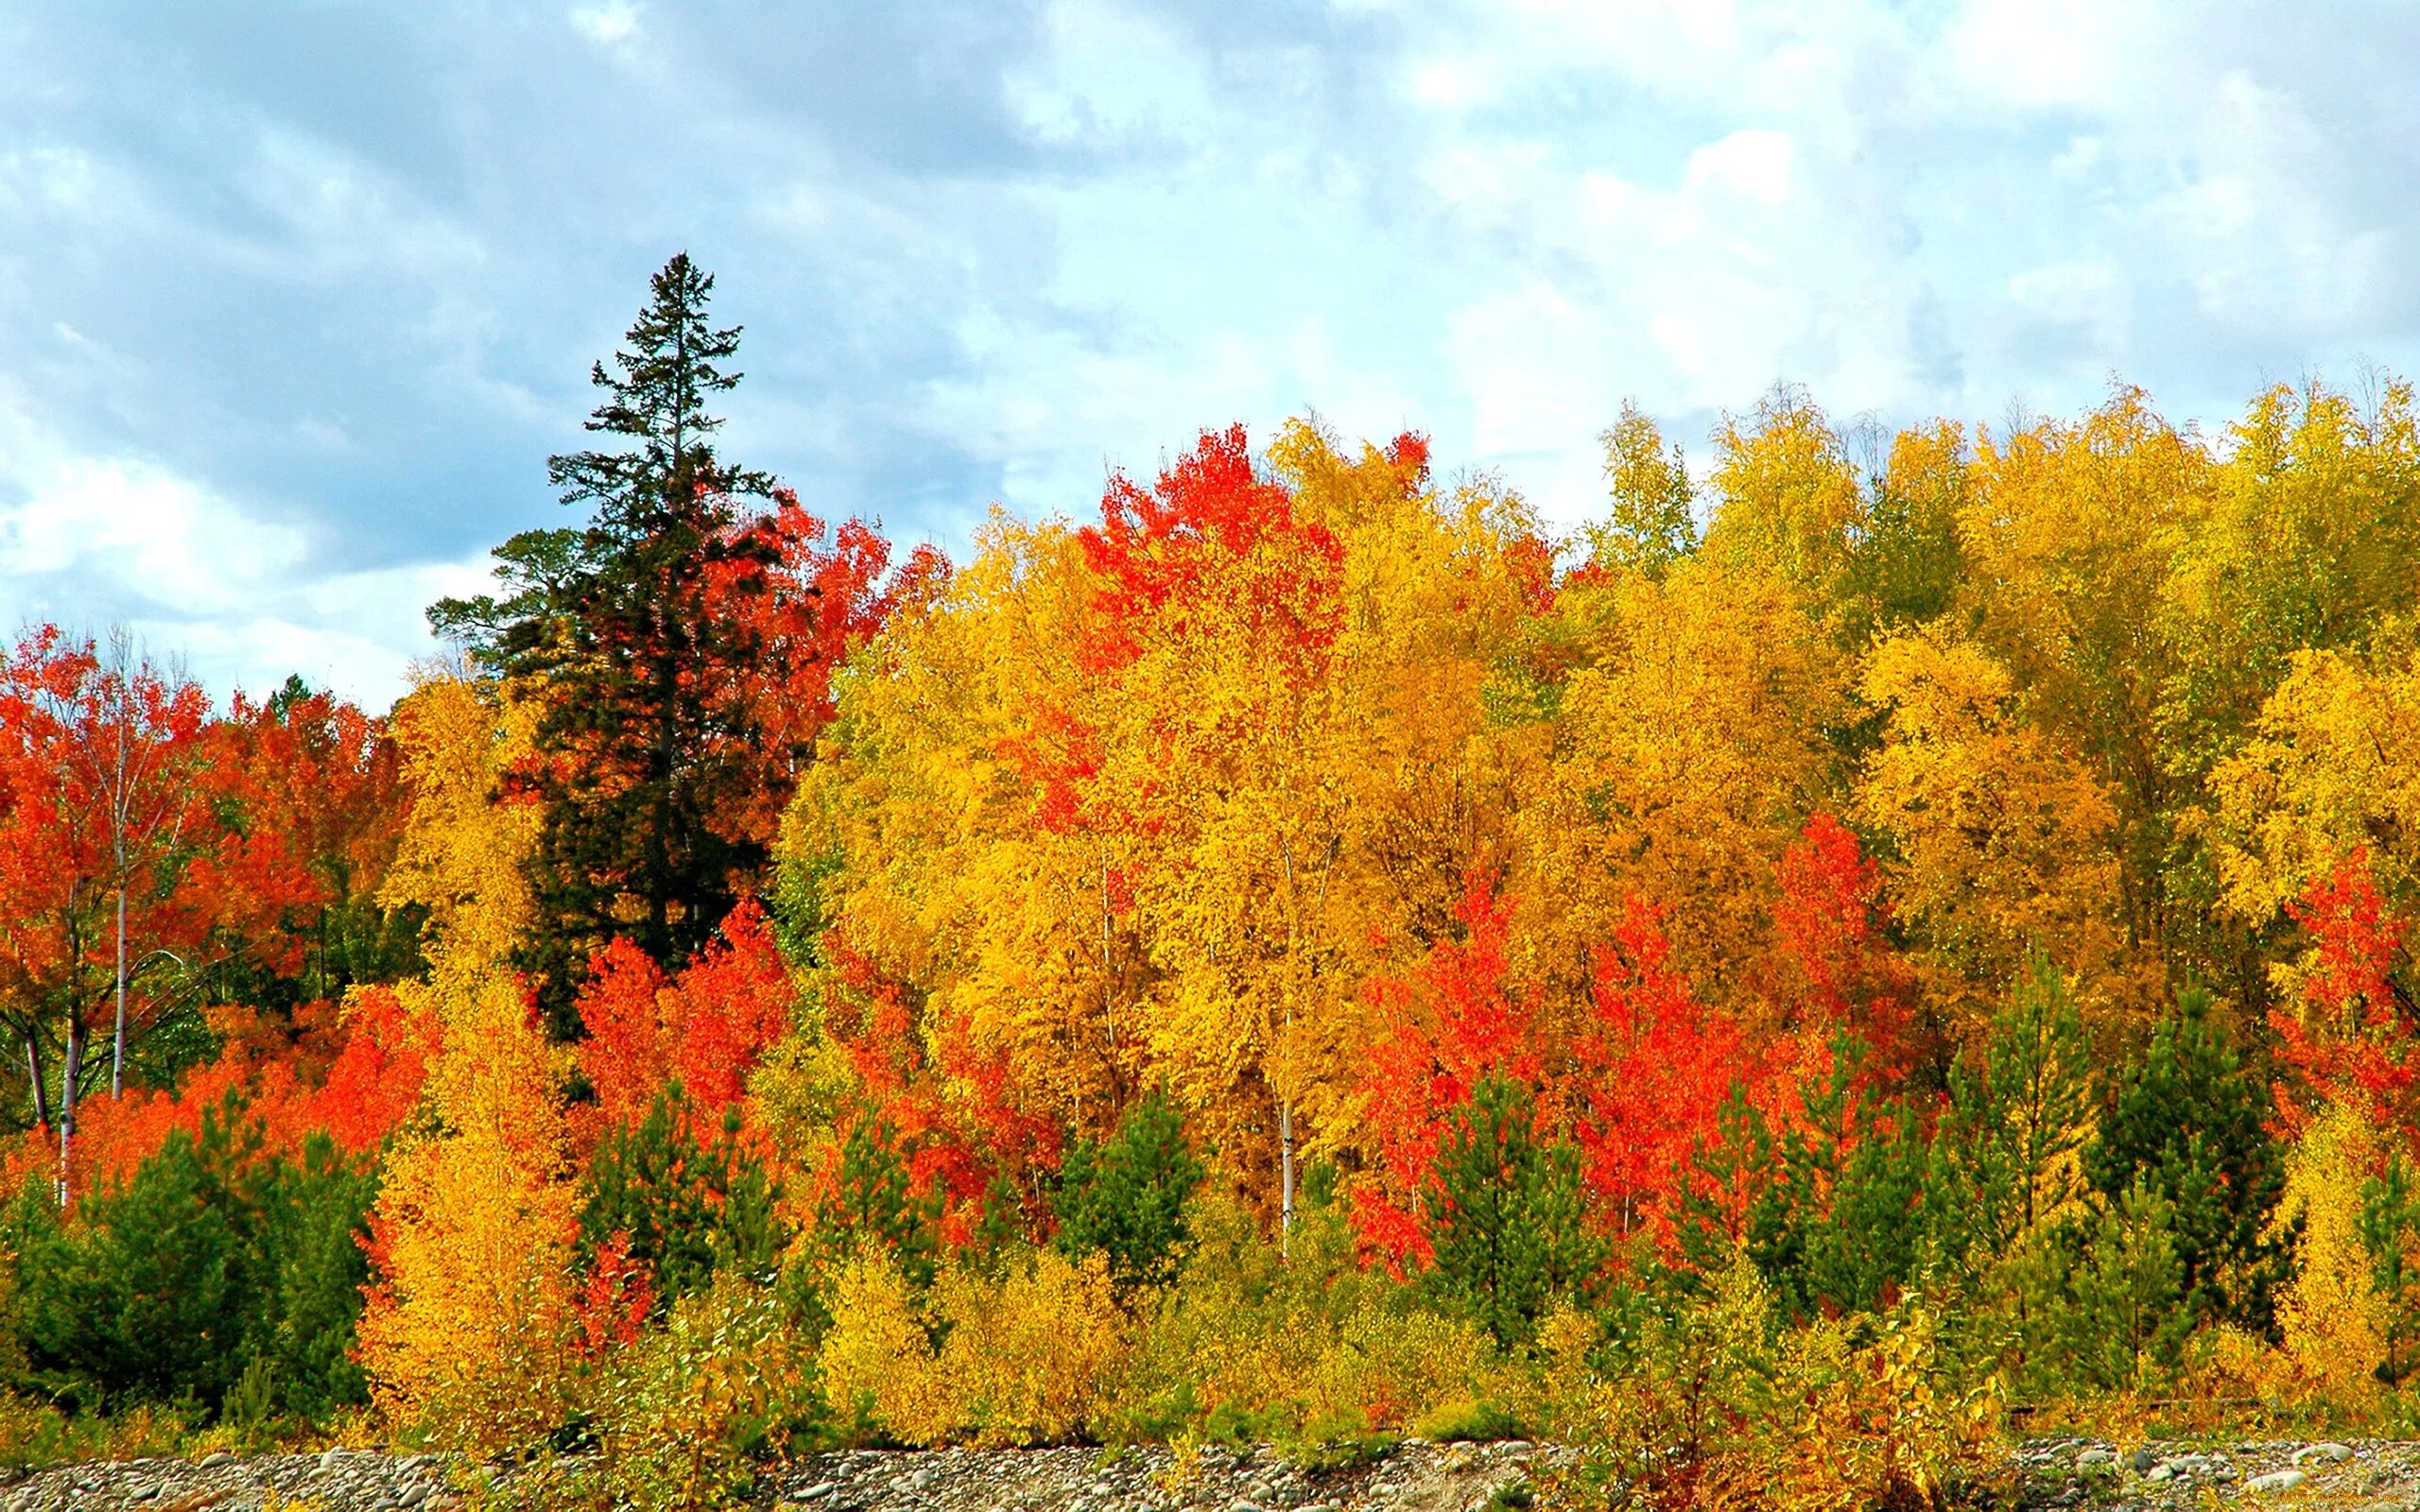 Может ли вас взволновать красота осеннего леса. Лес точно Терем расписной лиловый. Лес точно Терем расписной лиловый золотой багряный. Осенний лес лиловый золотой багряный. Осенний лес.